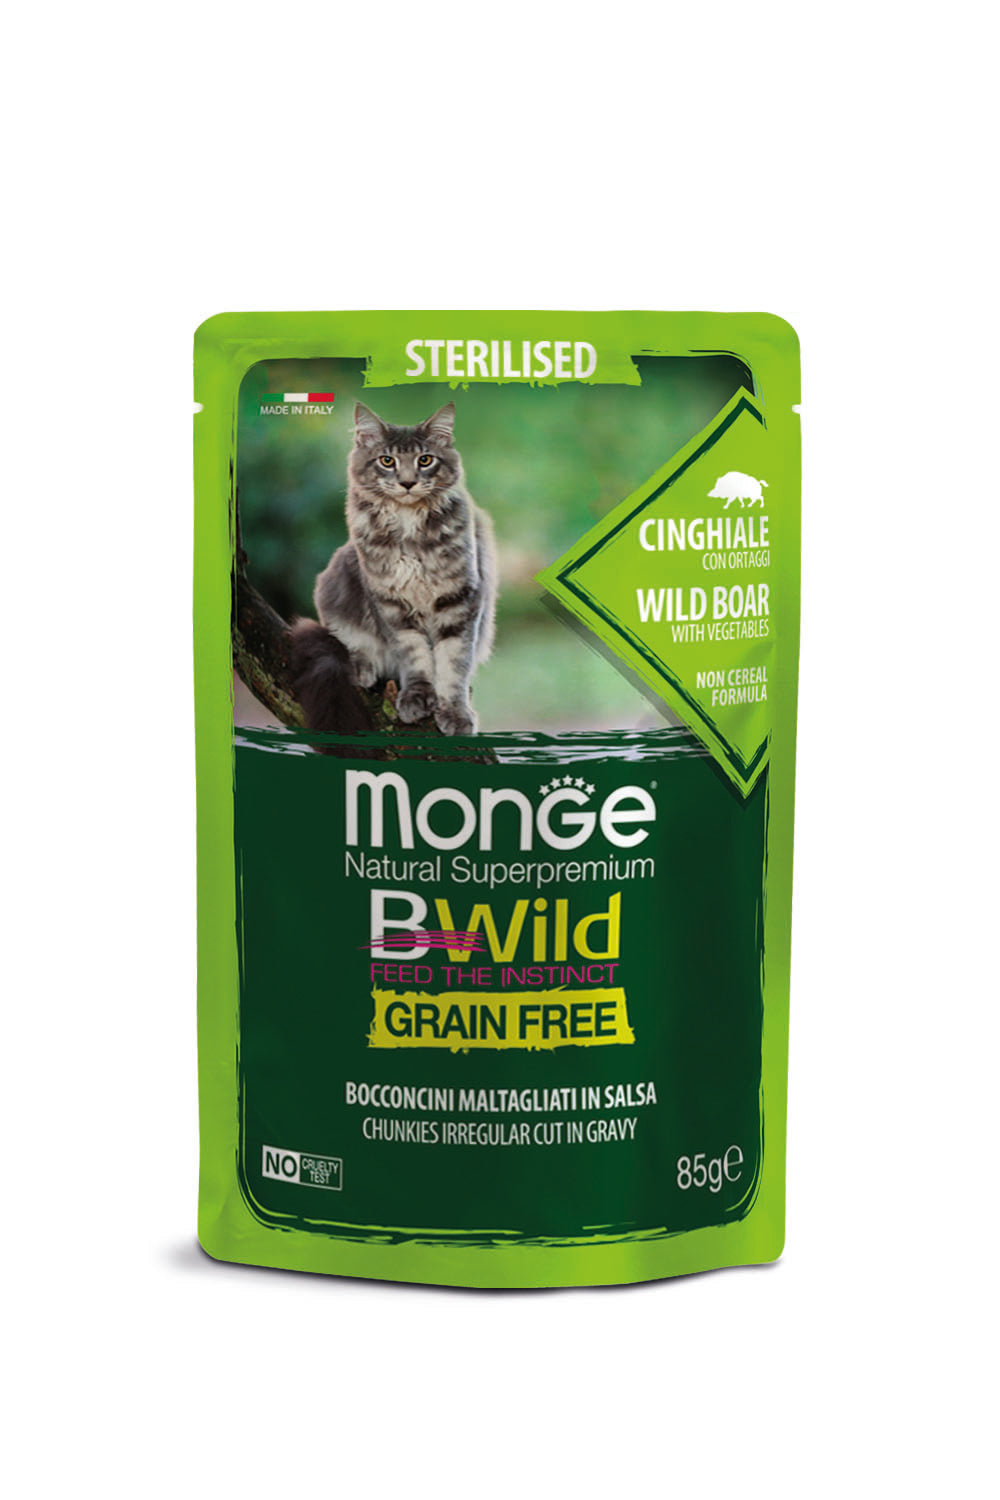 Monge Cat - Bwild - GRAIN FREE - Sterilised Boar